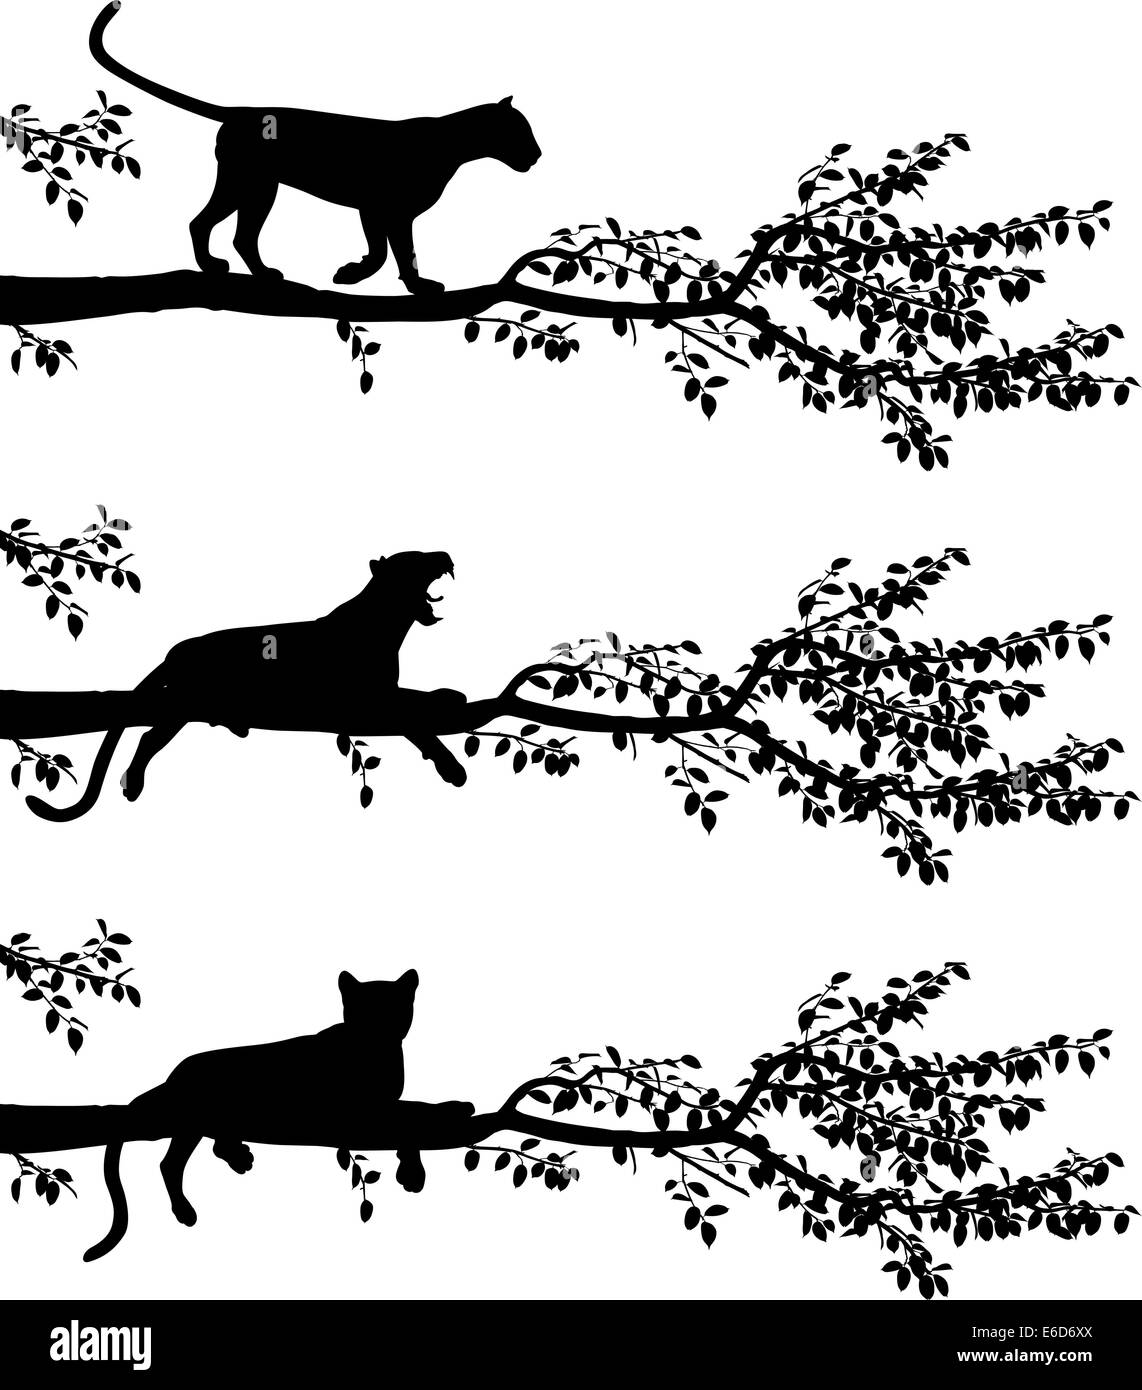 Ensemble de trois silhouettes vecteur modifiable d'un léopard sur une branche d'arbre avec des léopards en tant qu'objets séparés Illustration de Vecteur